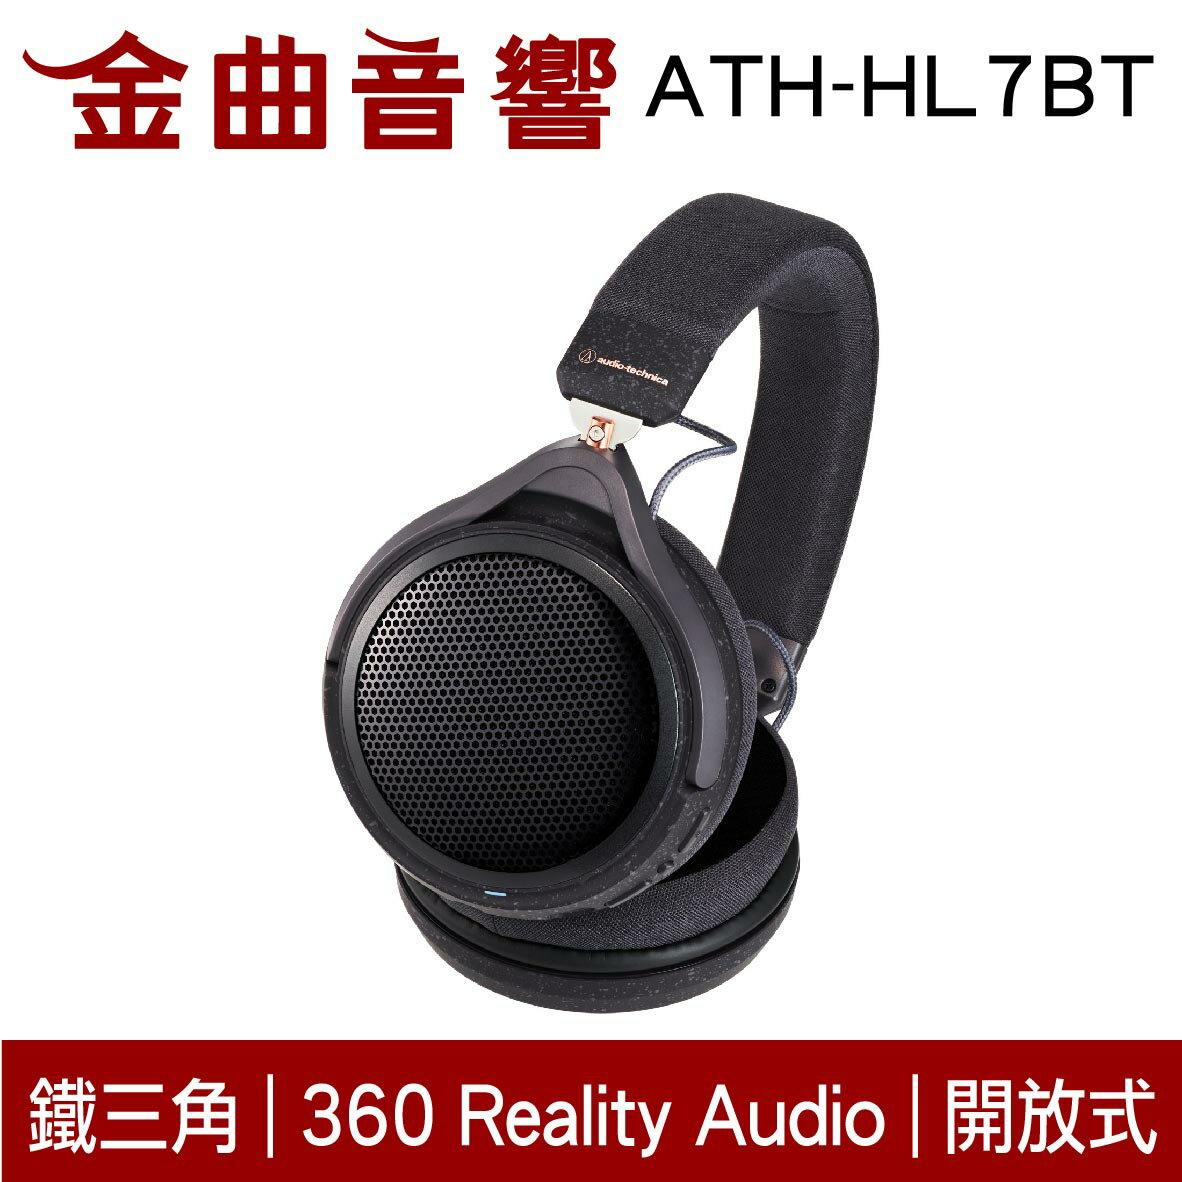 鐵三角 ATH-HL7BT 低延遲 Ø53mm 通話 支援專用App 開放式 耳罩式 藍芽 耳機 | 金曲音響